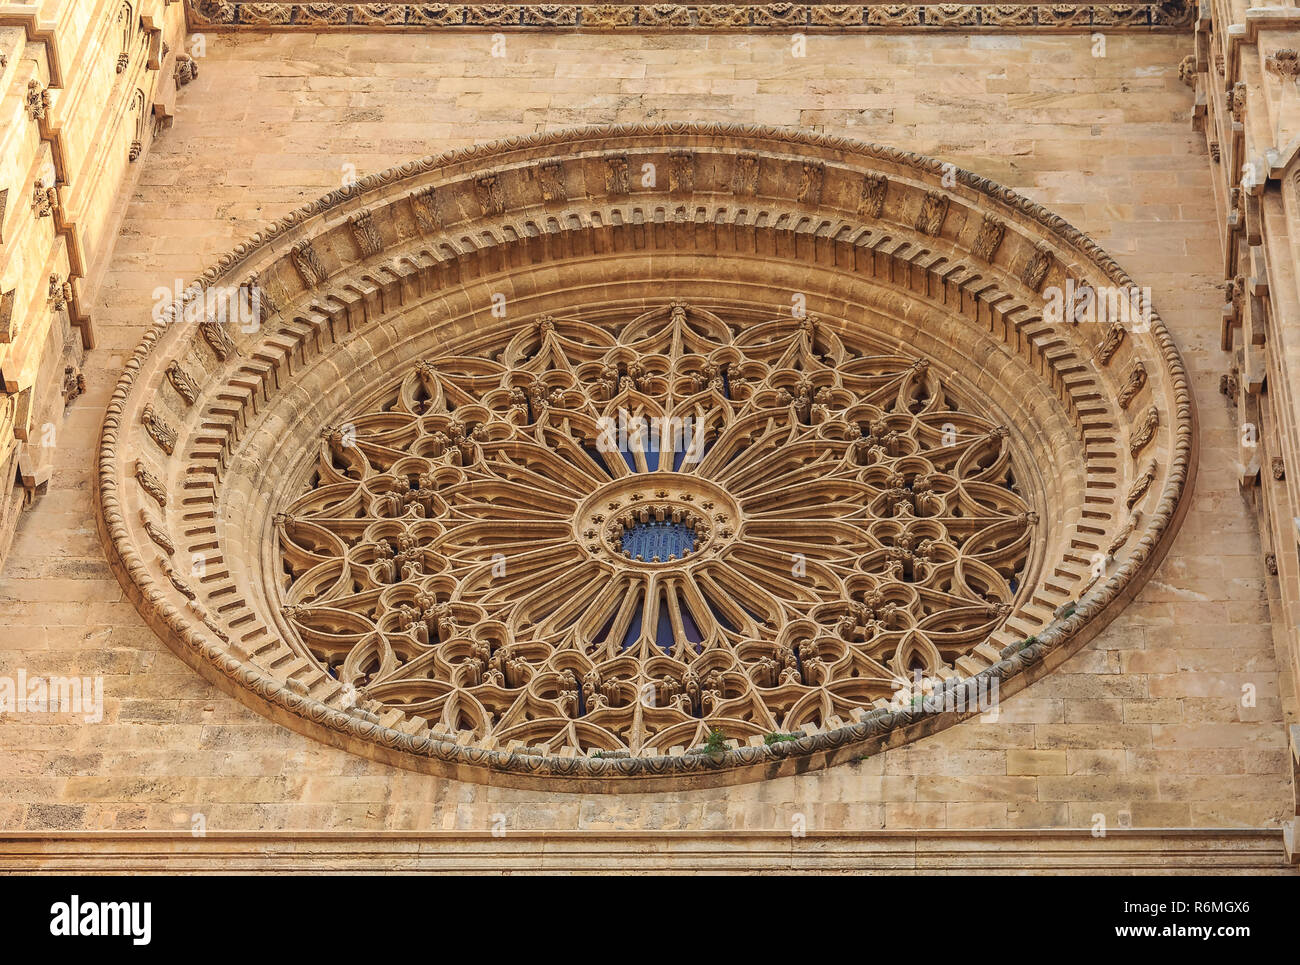 Rosone della Cattedrale di Santa Maria di Palma (Cattedrale di Santa Maria di Palma) o La Seu, una gotica Cattedrale cattolica romana a Palma de Mallorca in Foto Stock